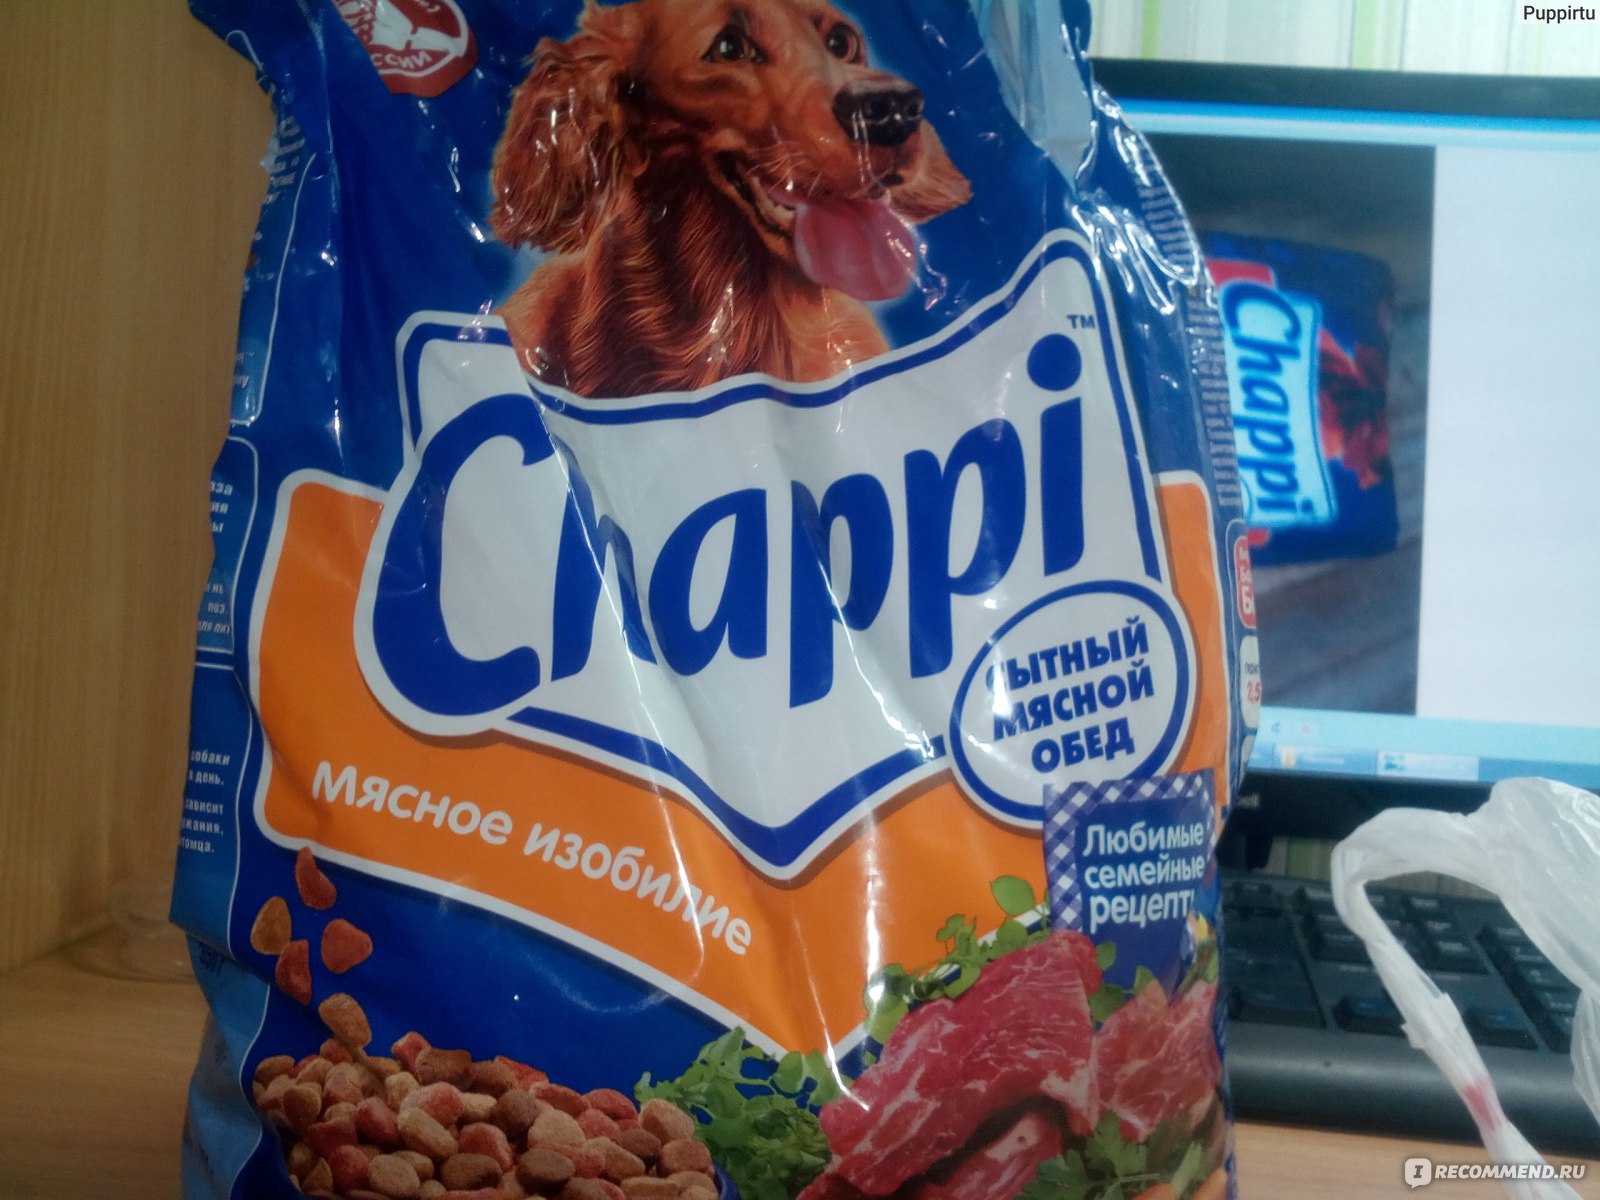 Чаппи корм для собак 15кг. Корм Чаппи 15. Корм Chappi 15 кг. Chappi мясное изобилие (15 кг).